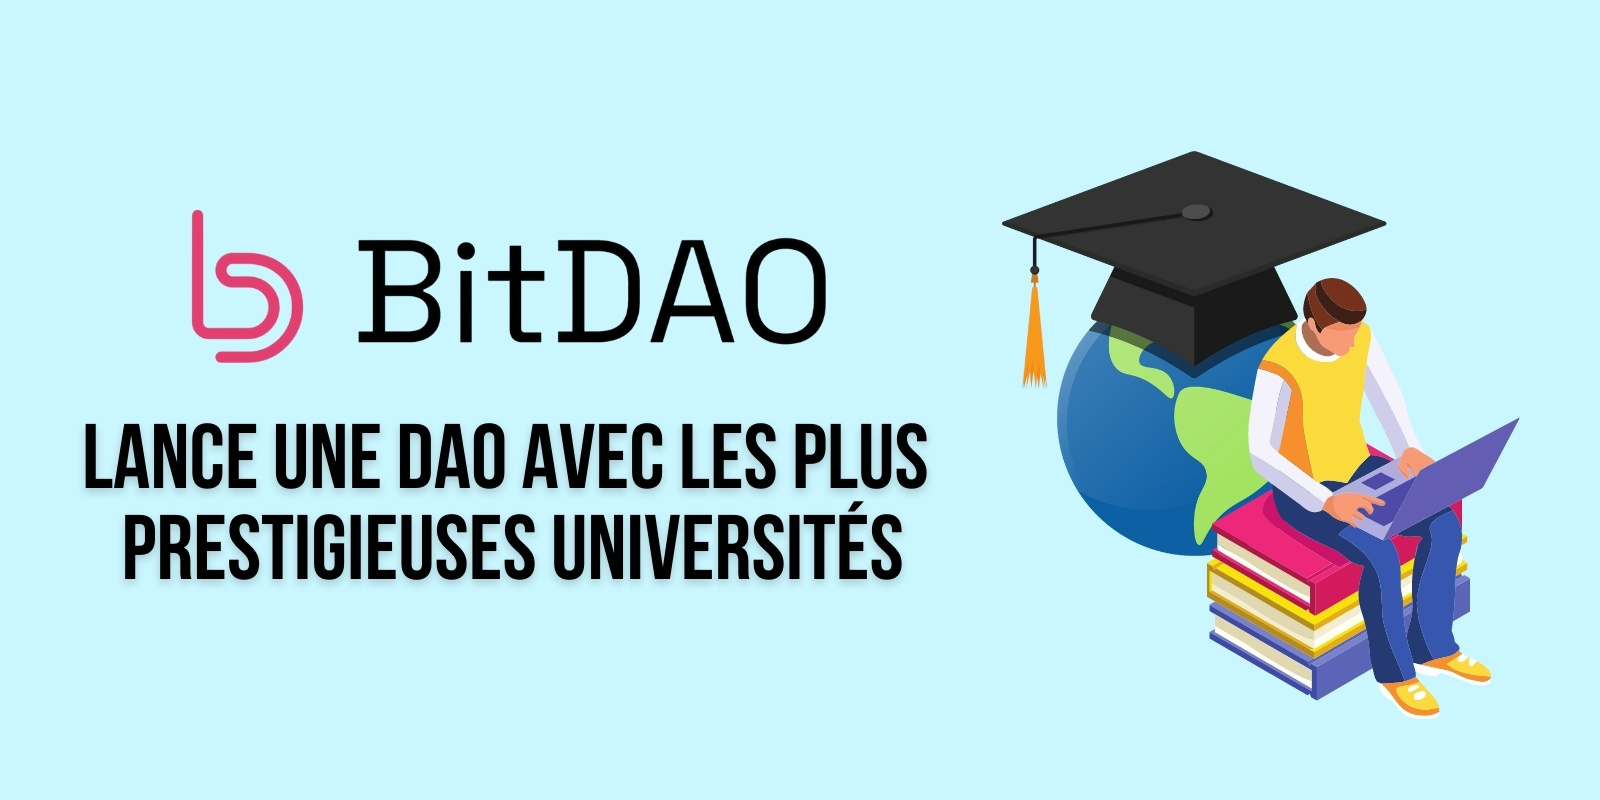 BitDAO forme une DAO avec le MIT, Harvard, Oxford et d'autres universités pour promouvoir le Web 3.0